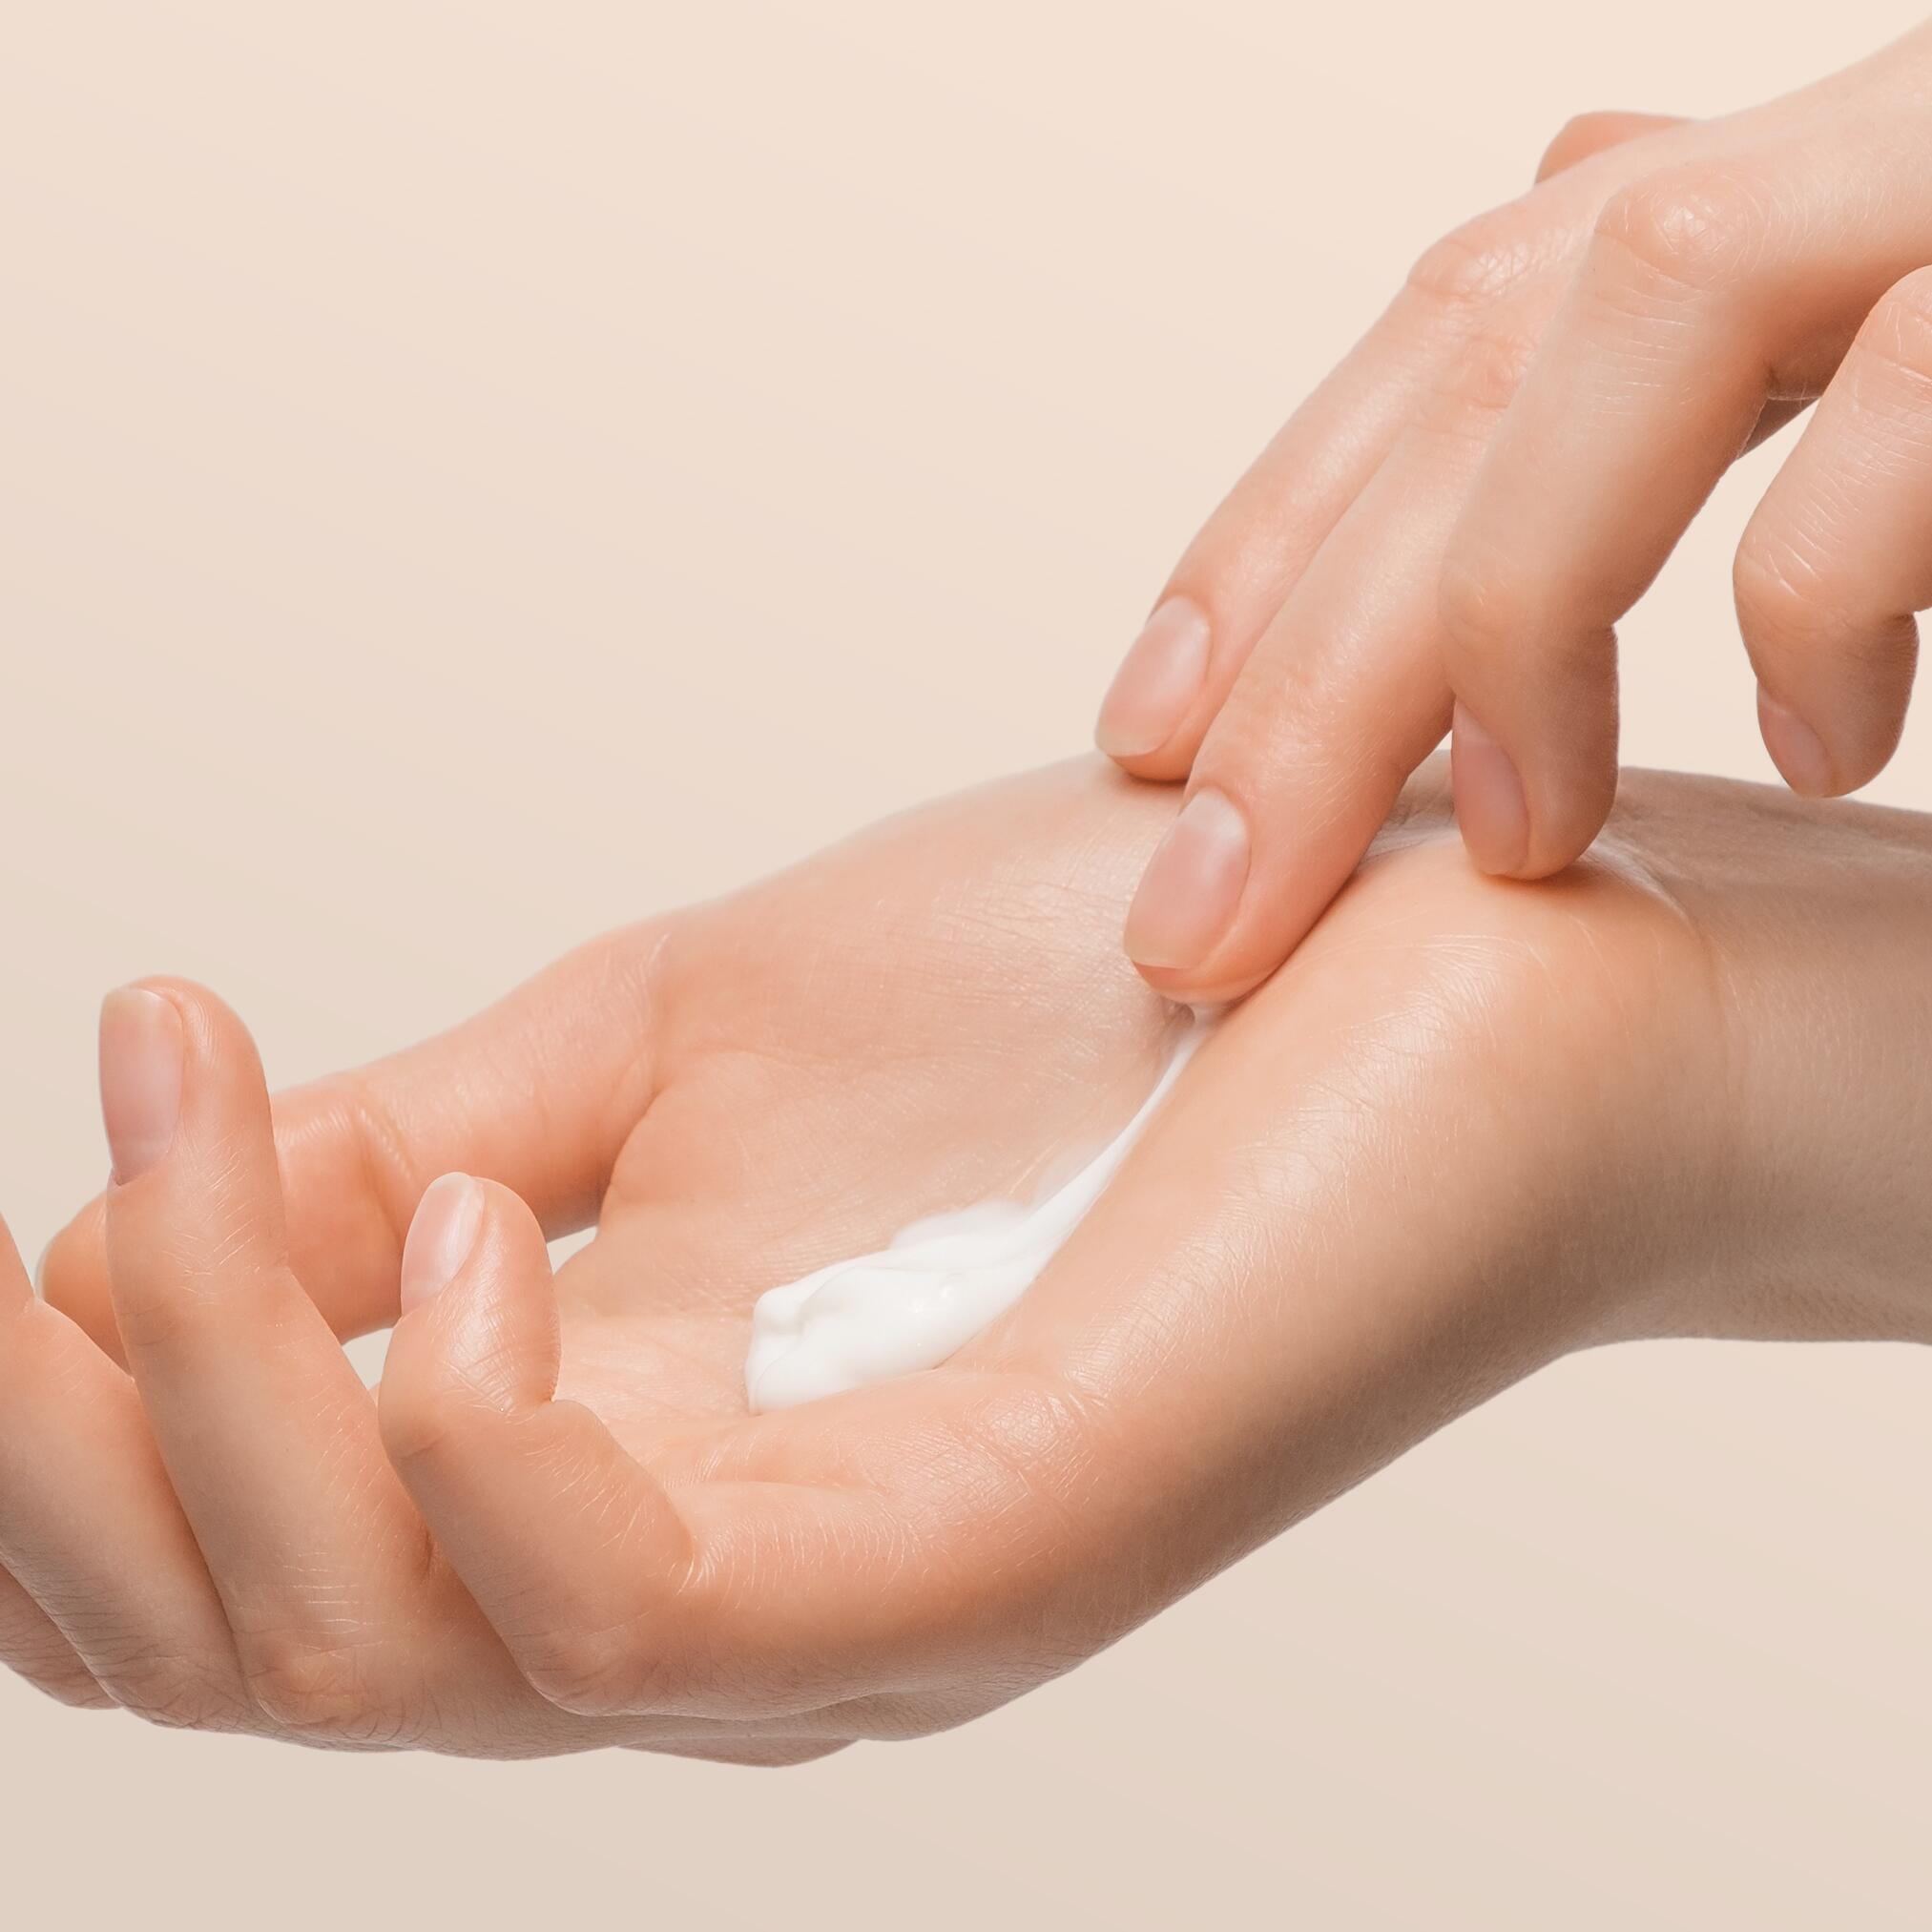 W jaki sposób pielęgnować suchą skórę dłoni?